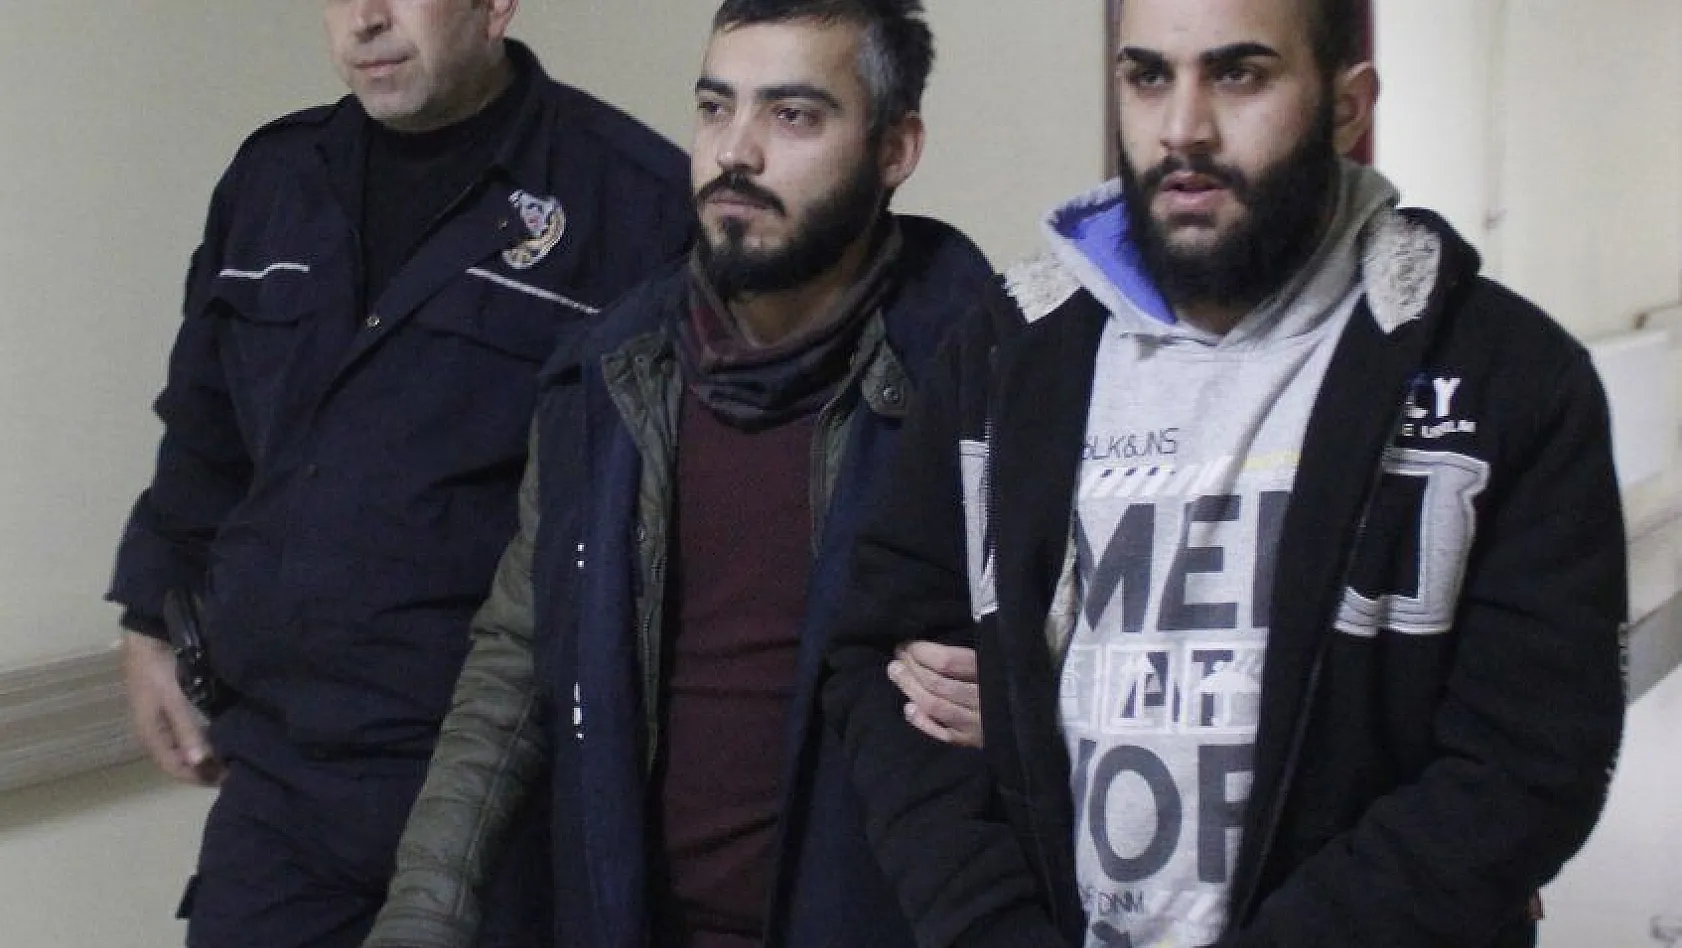 Kayseri'deki cinayetle ilgili Suriyeli 3 kişi gözaltına alındı